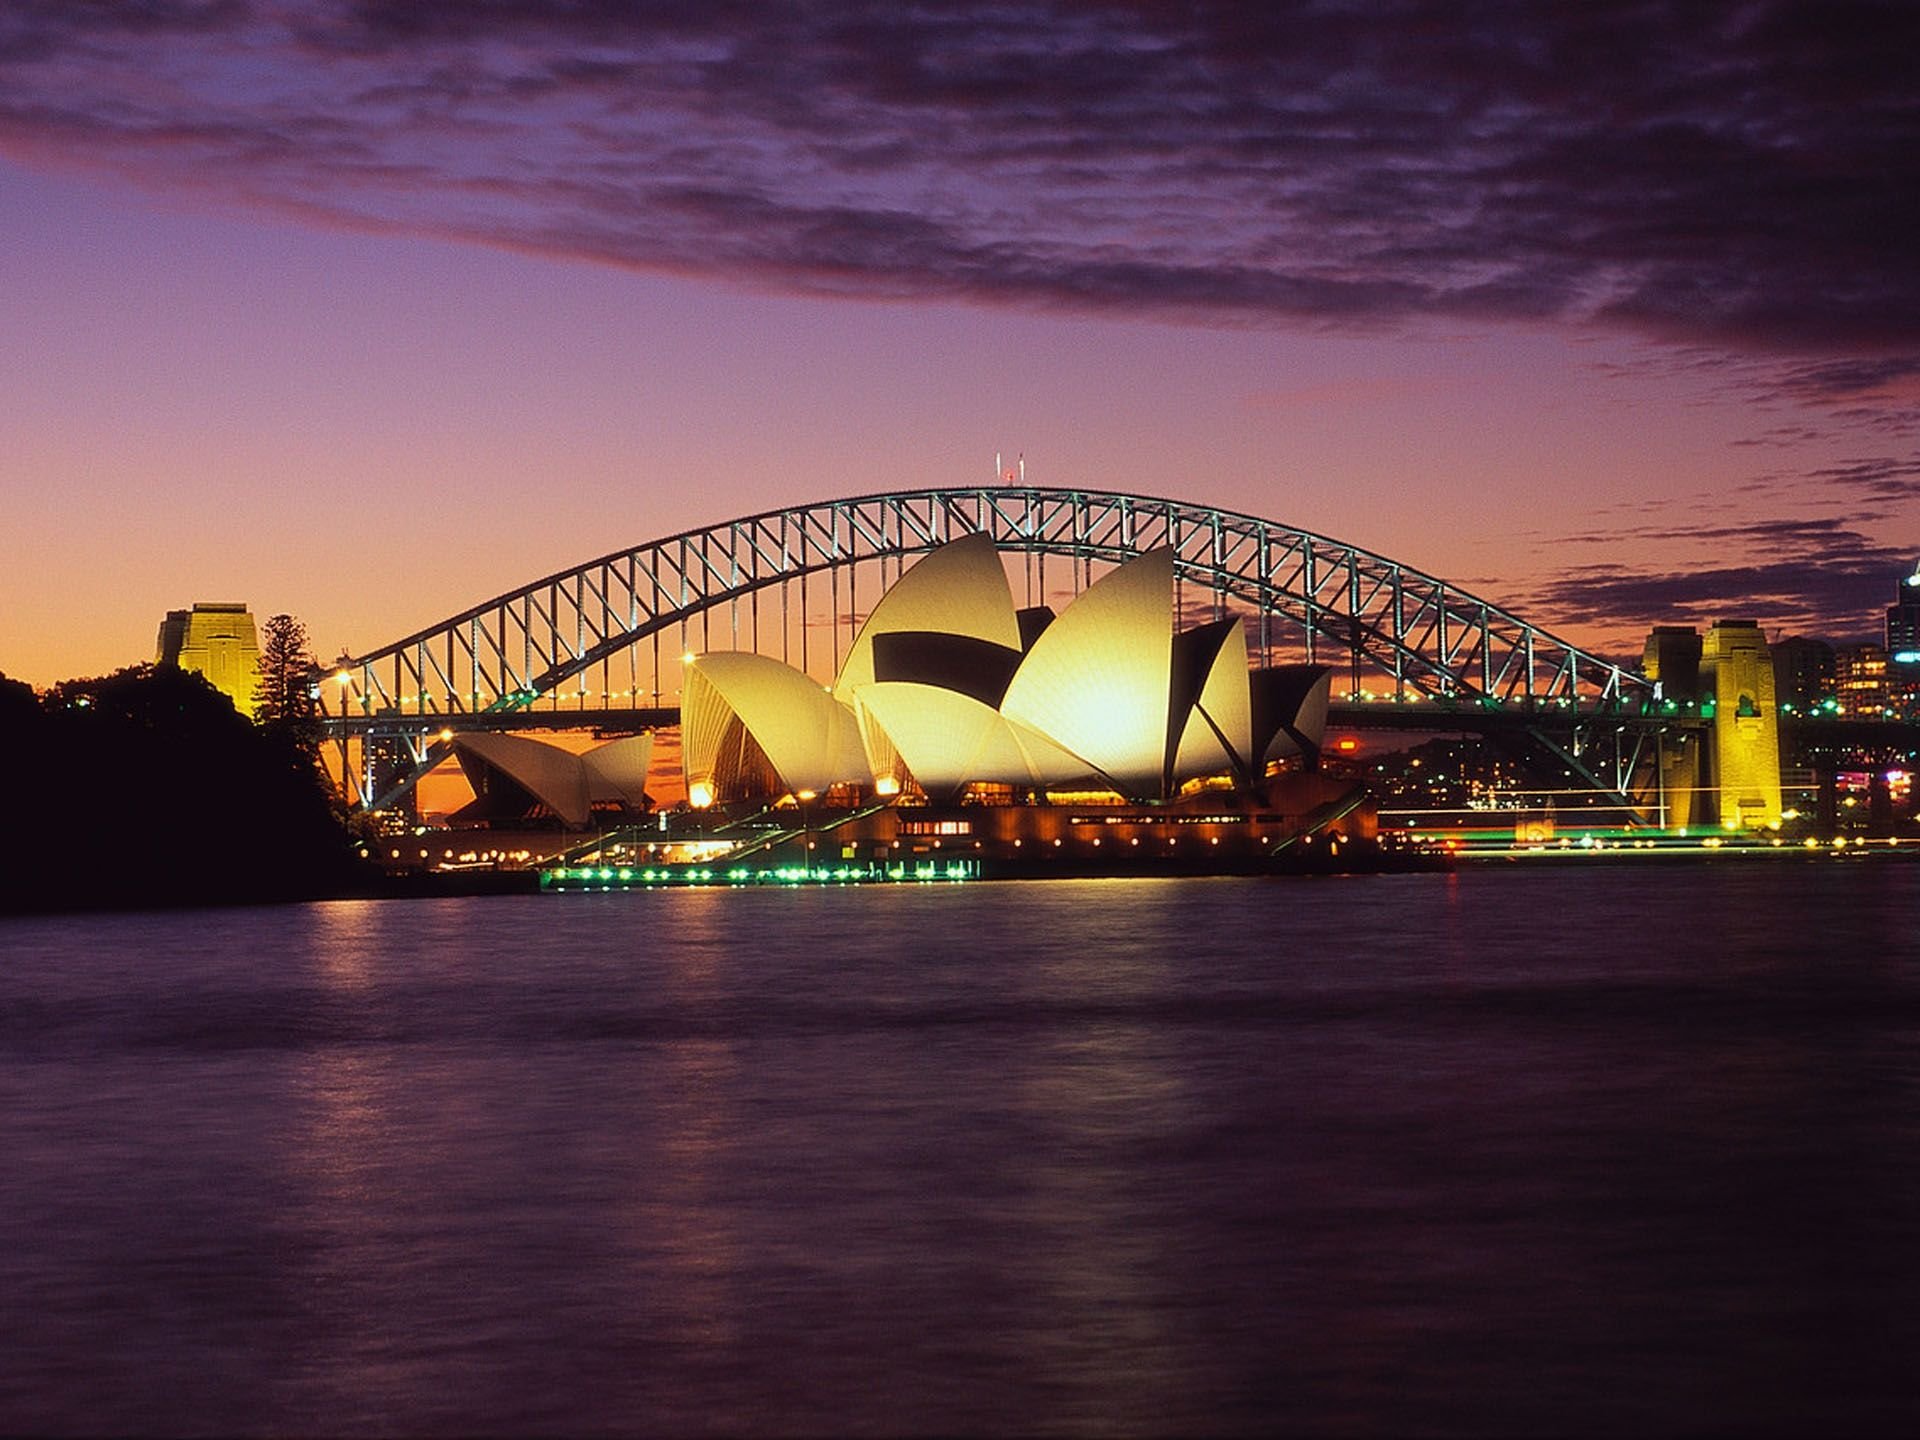 Sydney australia. Сидней. Сидней столица Австралии. Сиднейский оперный театр и Харбор-бридж. Сиднейская гавань.